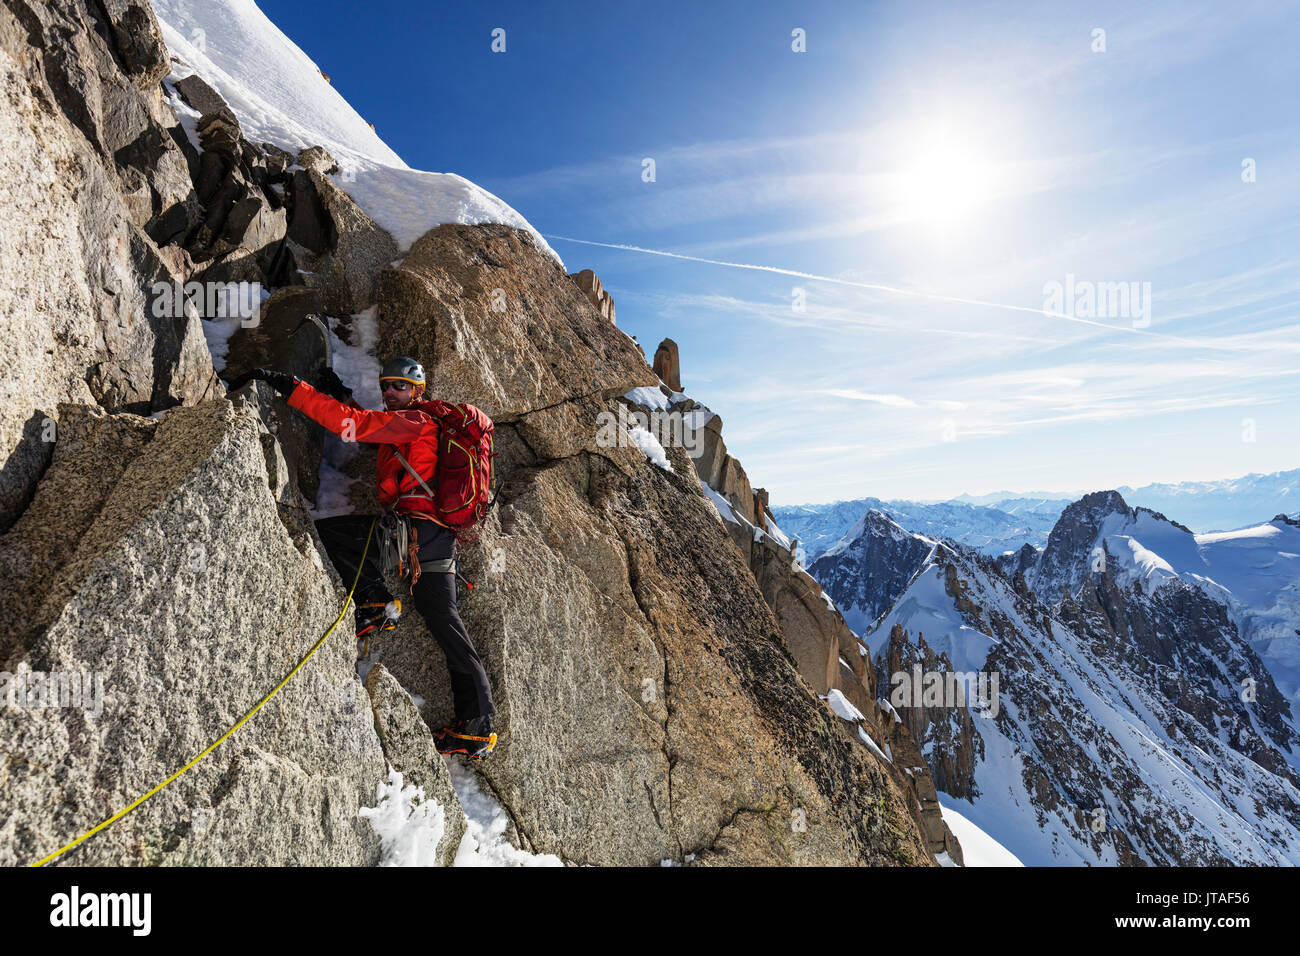 Les Droites d'escalade, 4000m, à Chamonix, Rhone Alpes, Haute Savoie, Alpes, France, Europe Banque D'Images